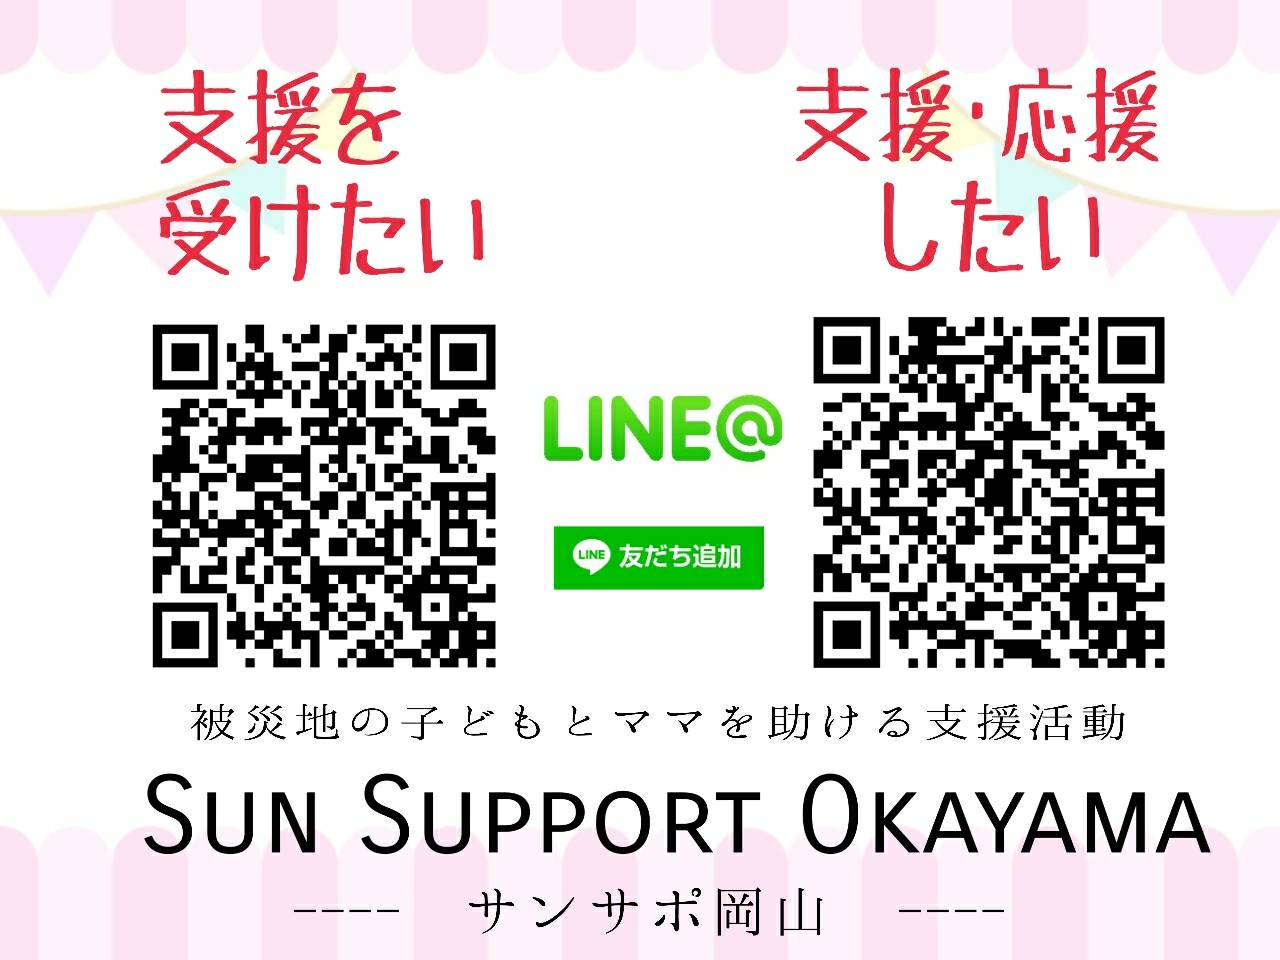 Sun Support OkayamaのLINE＠を公開いたしました。 